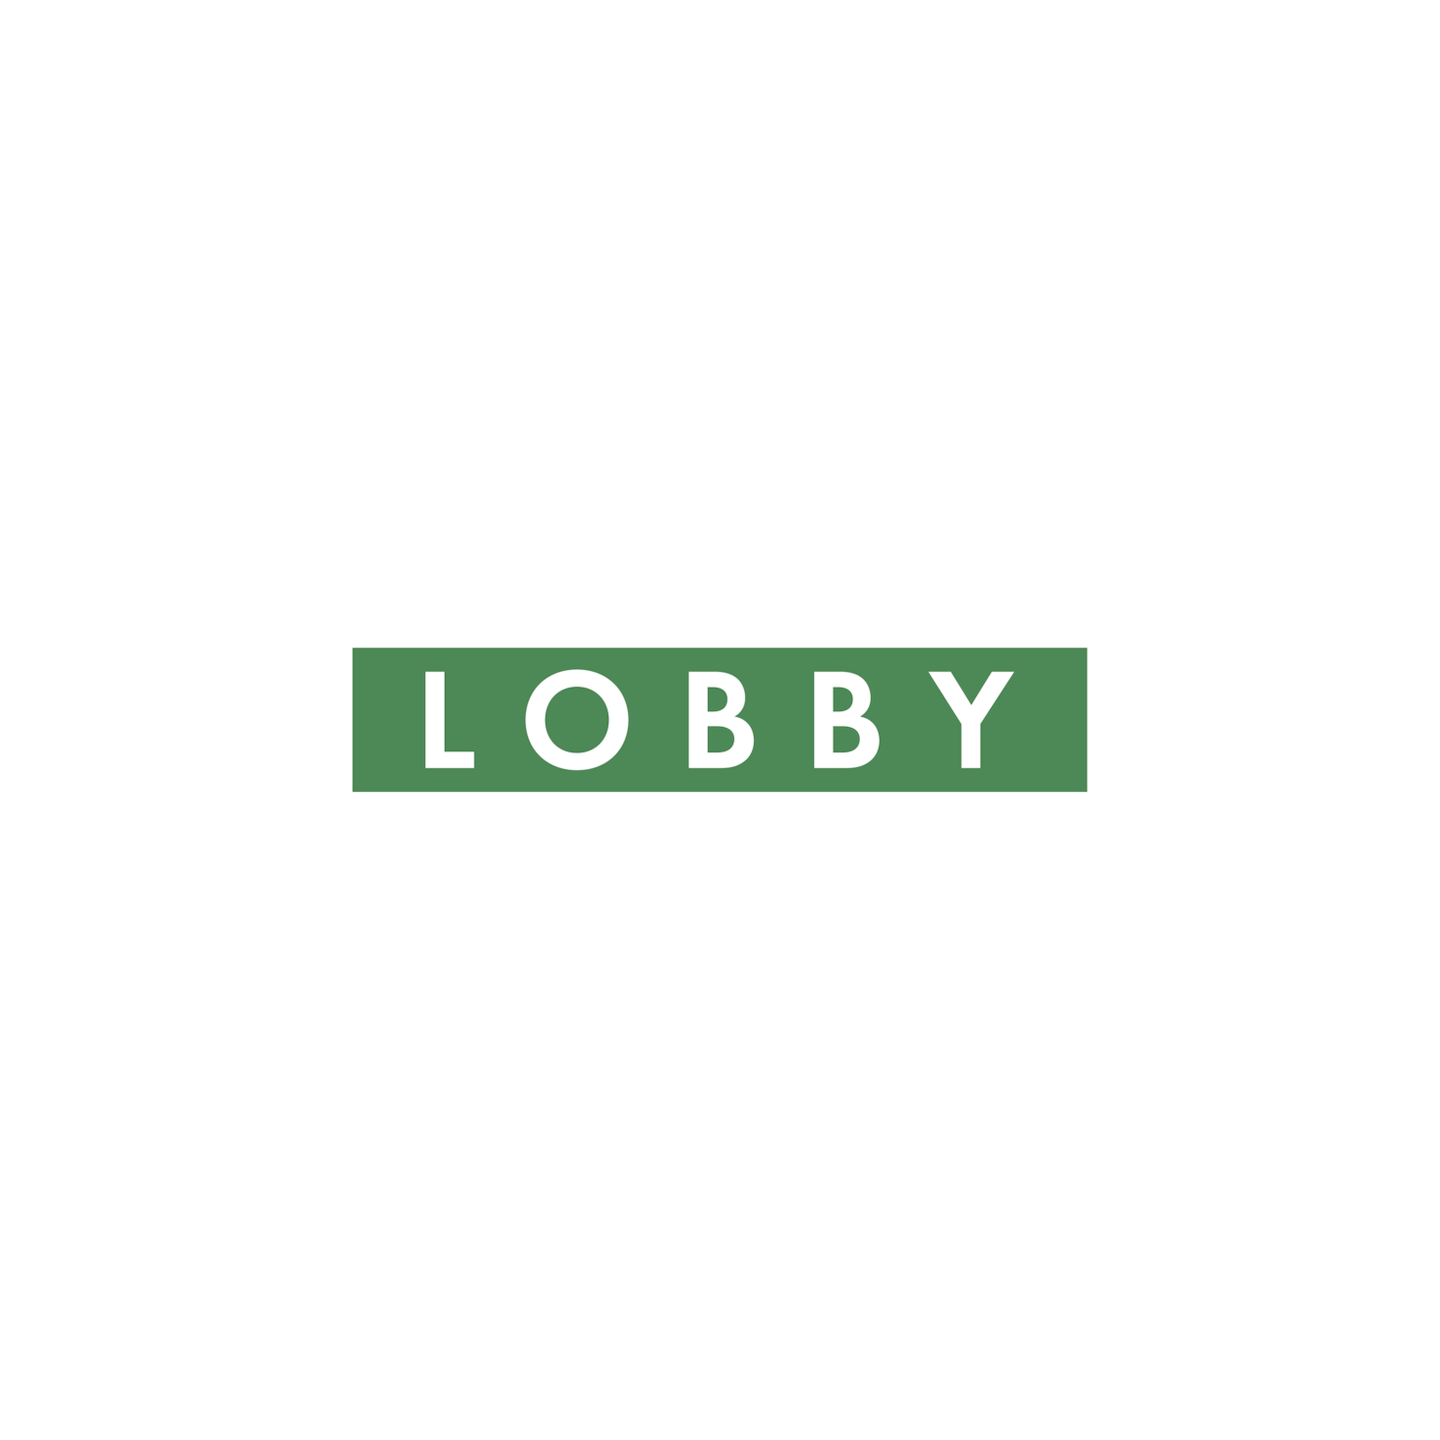 lobbylogo_green